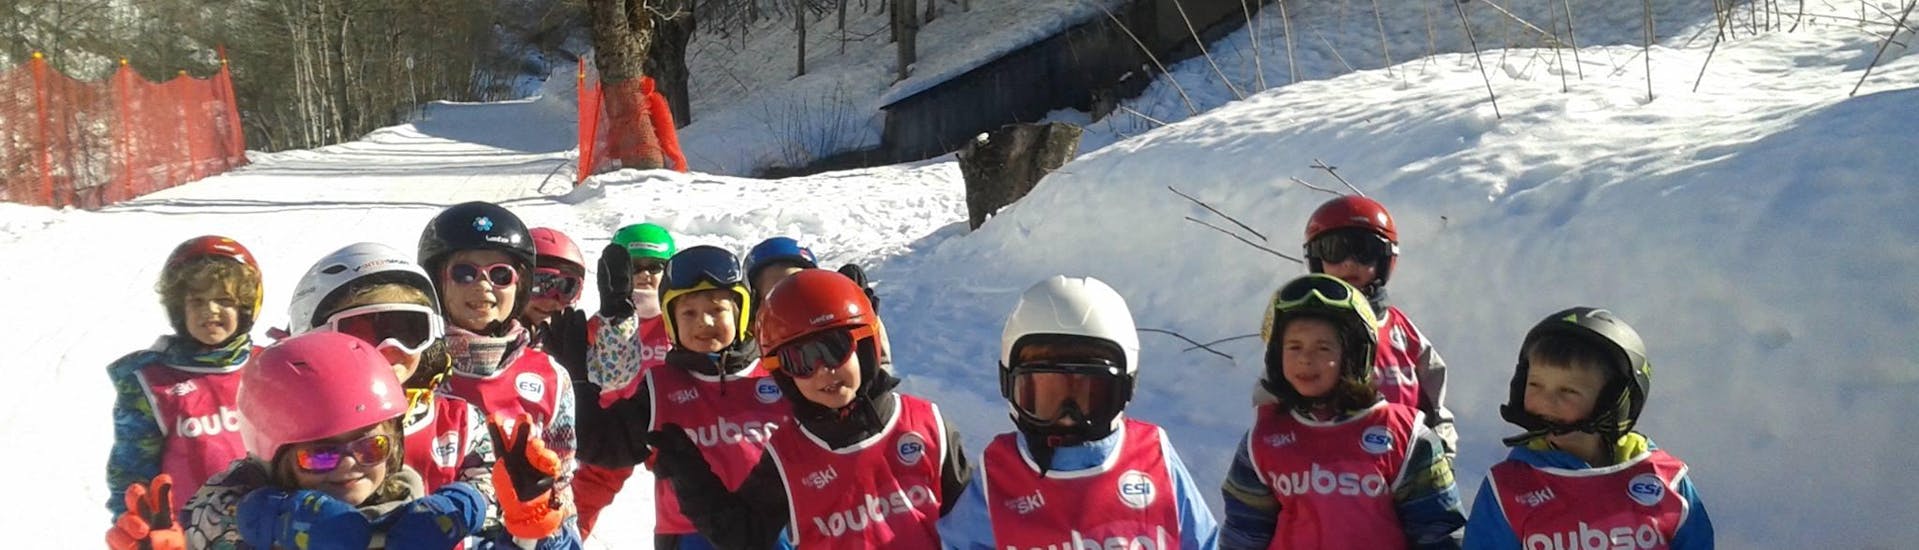 Kinder-Skikurs ab 5 Jahren für Anfänger.